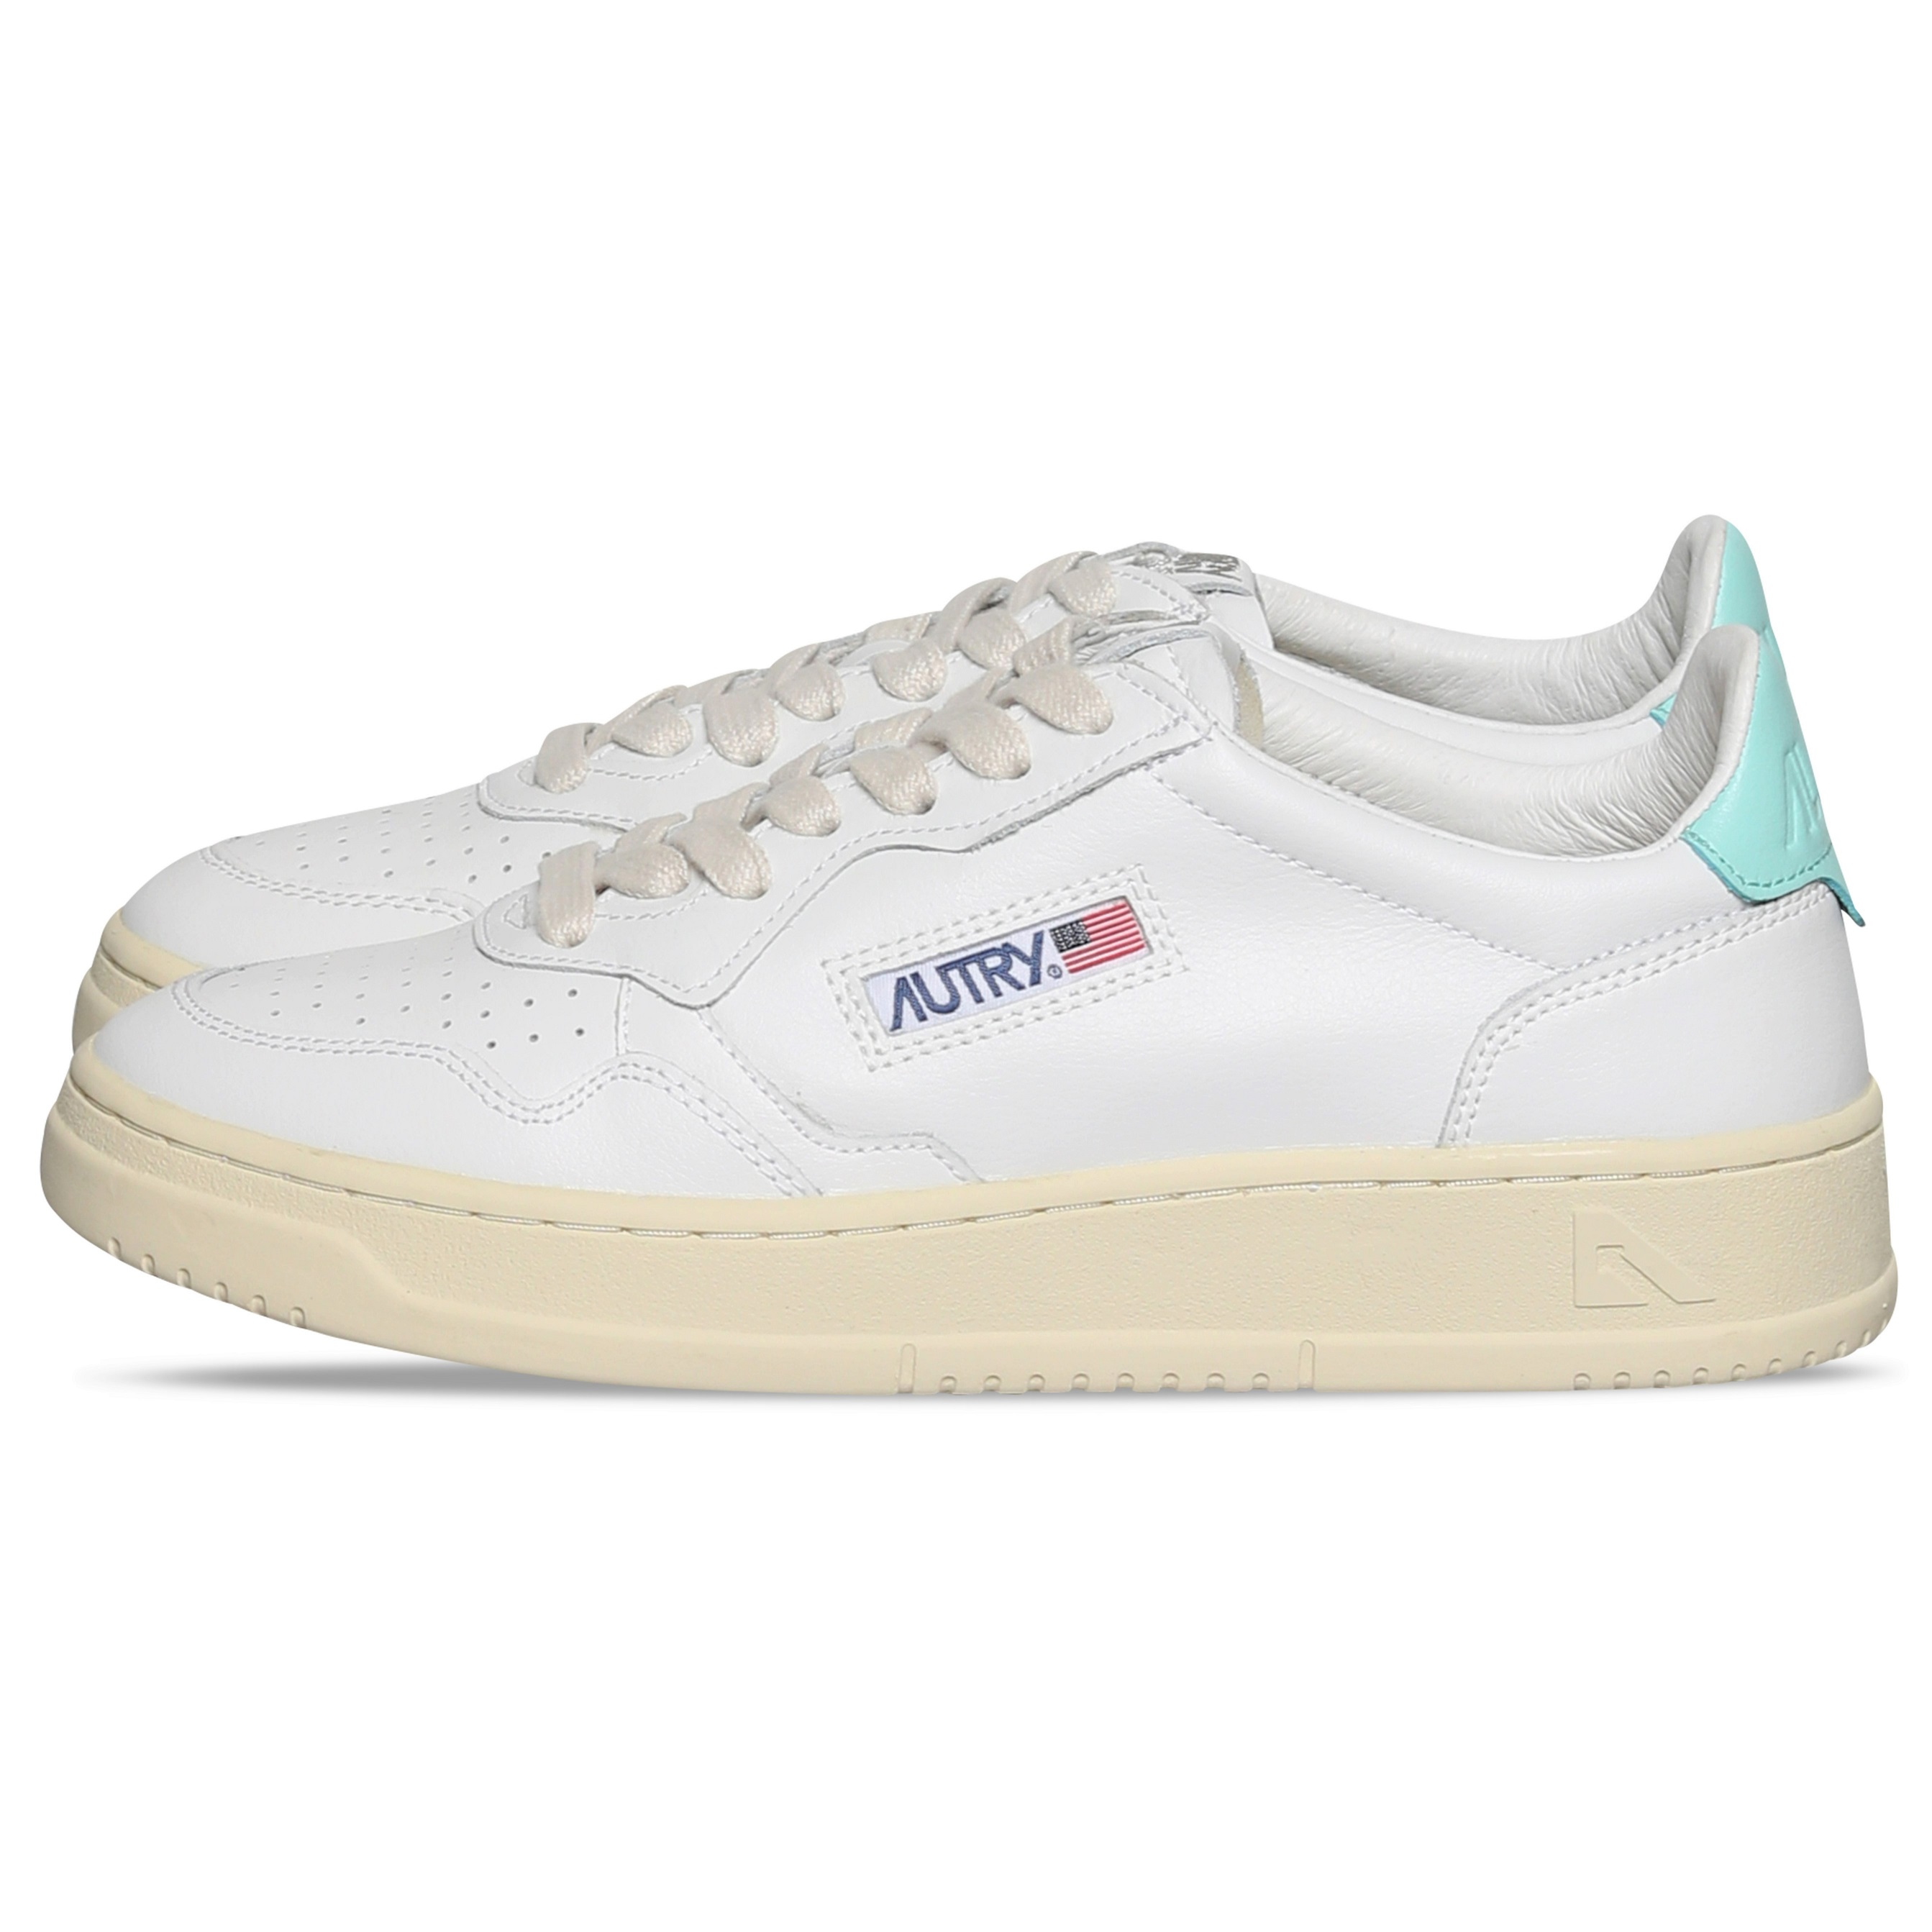 Autry Action Shoes Low Sneaker White/Turqoiuse 35